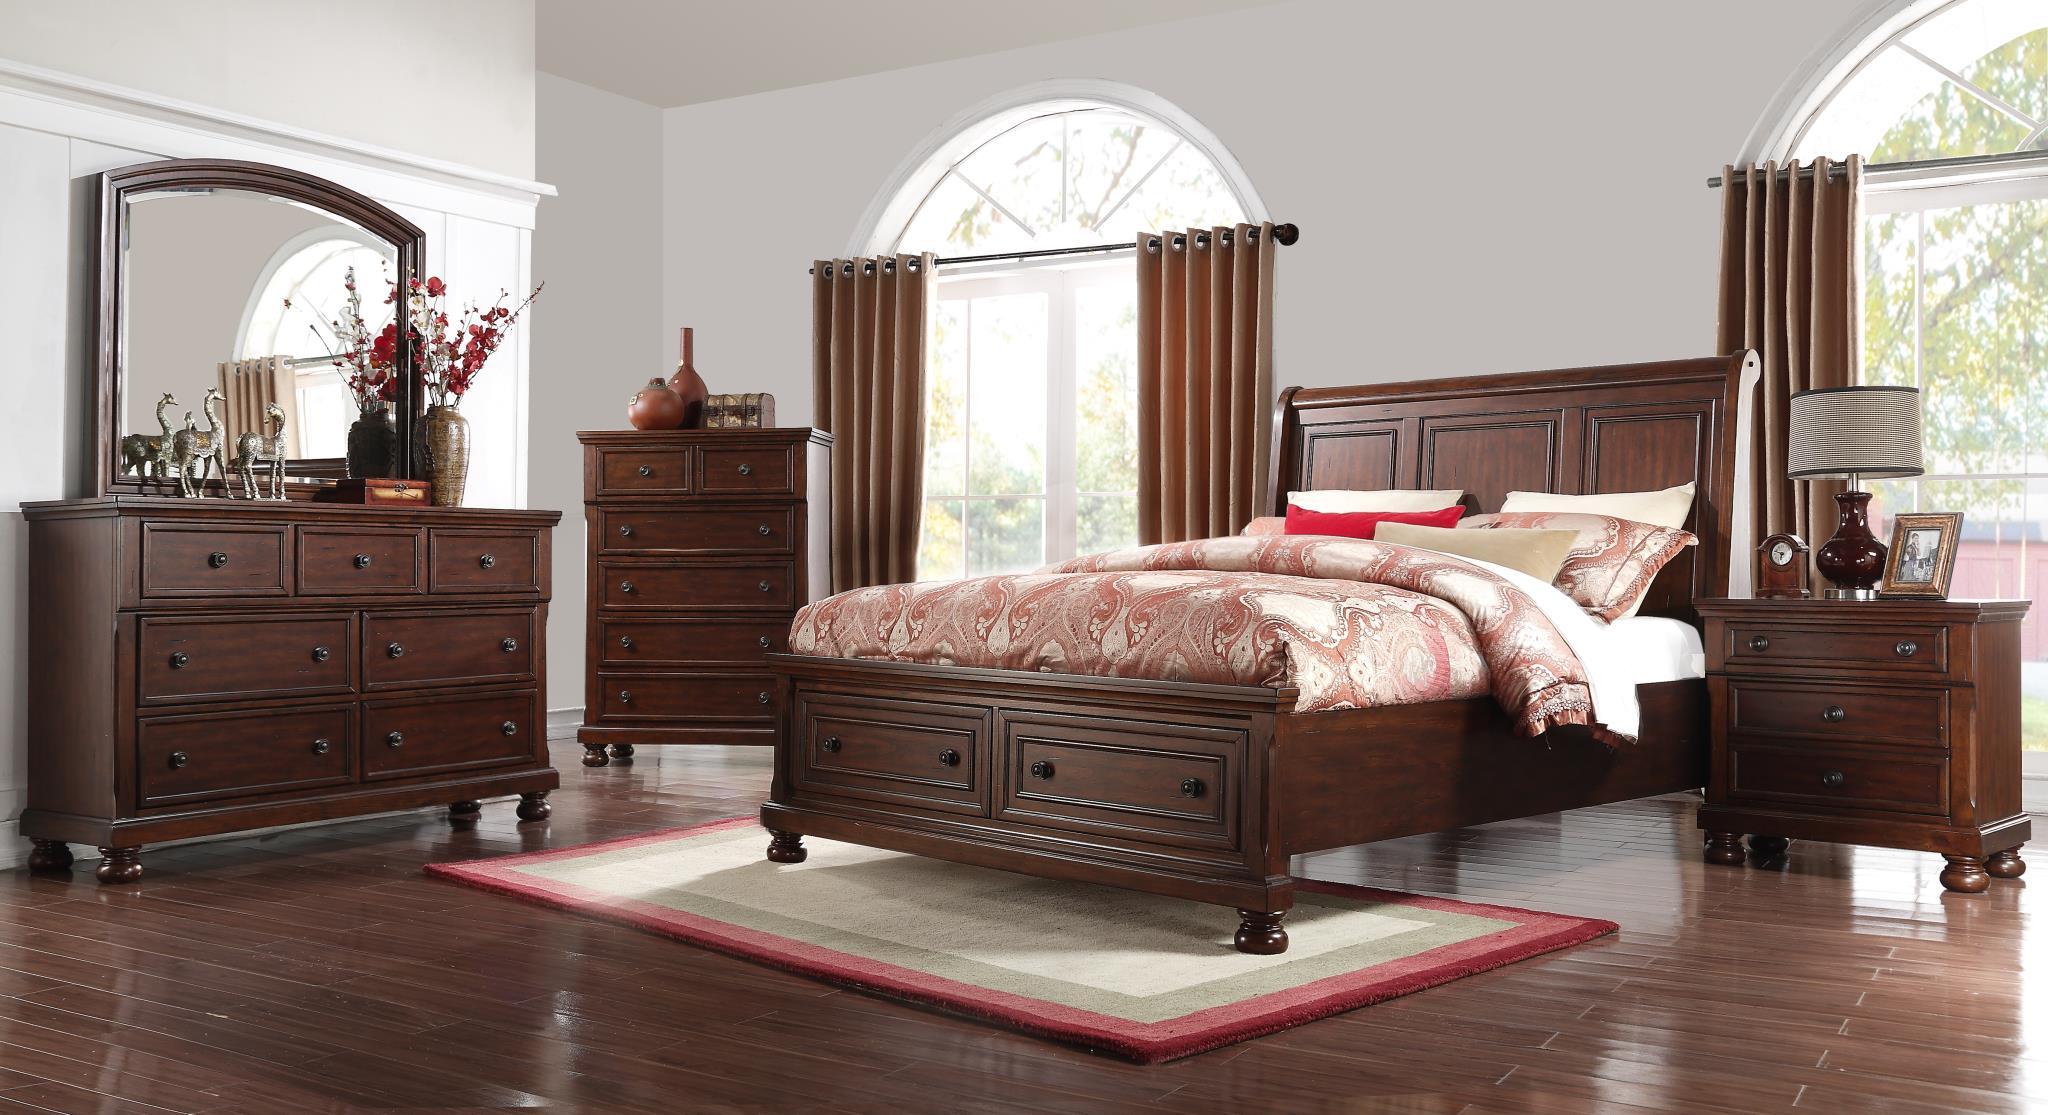 

        
Bernards Furniture PRESCOTT 1040 Storage Sleigh Bed Cherry  708939104041
